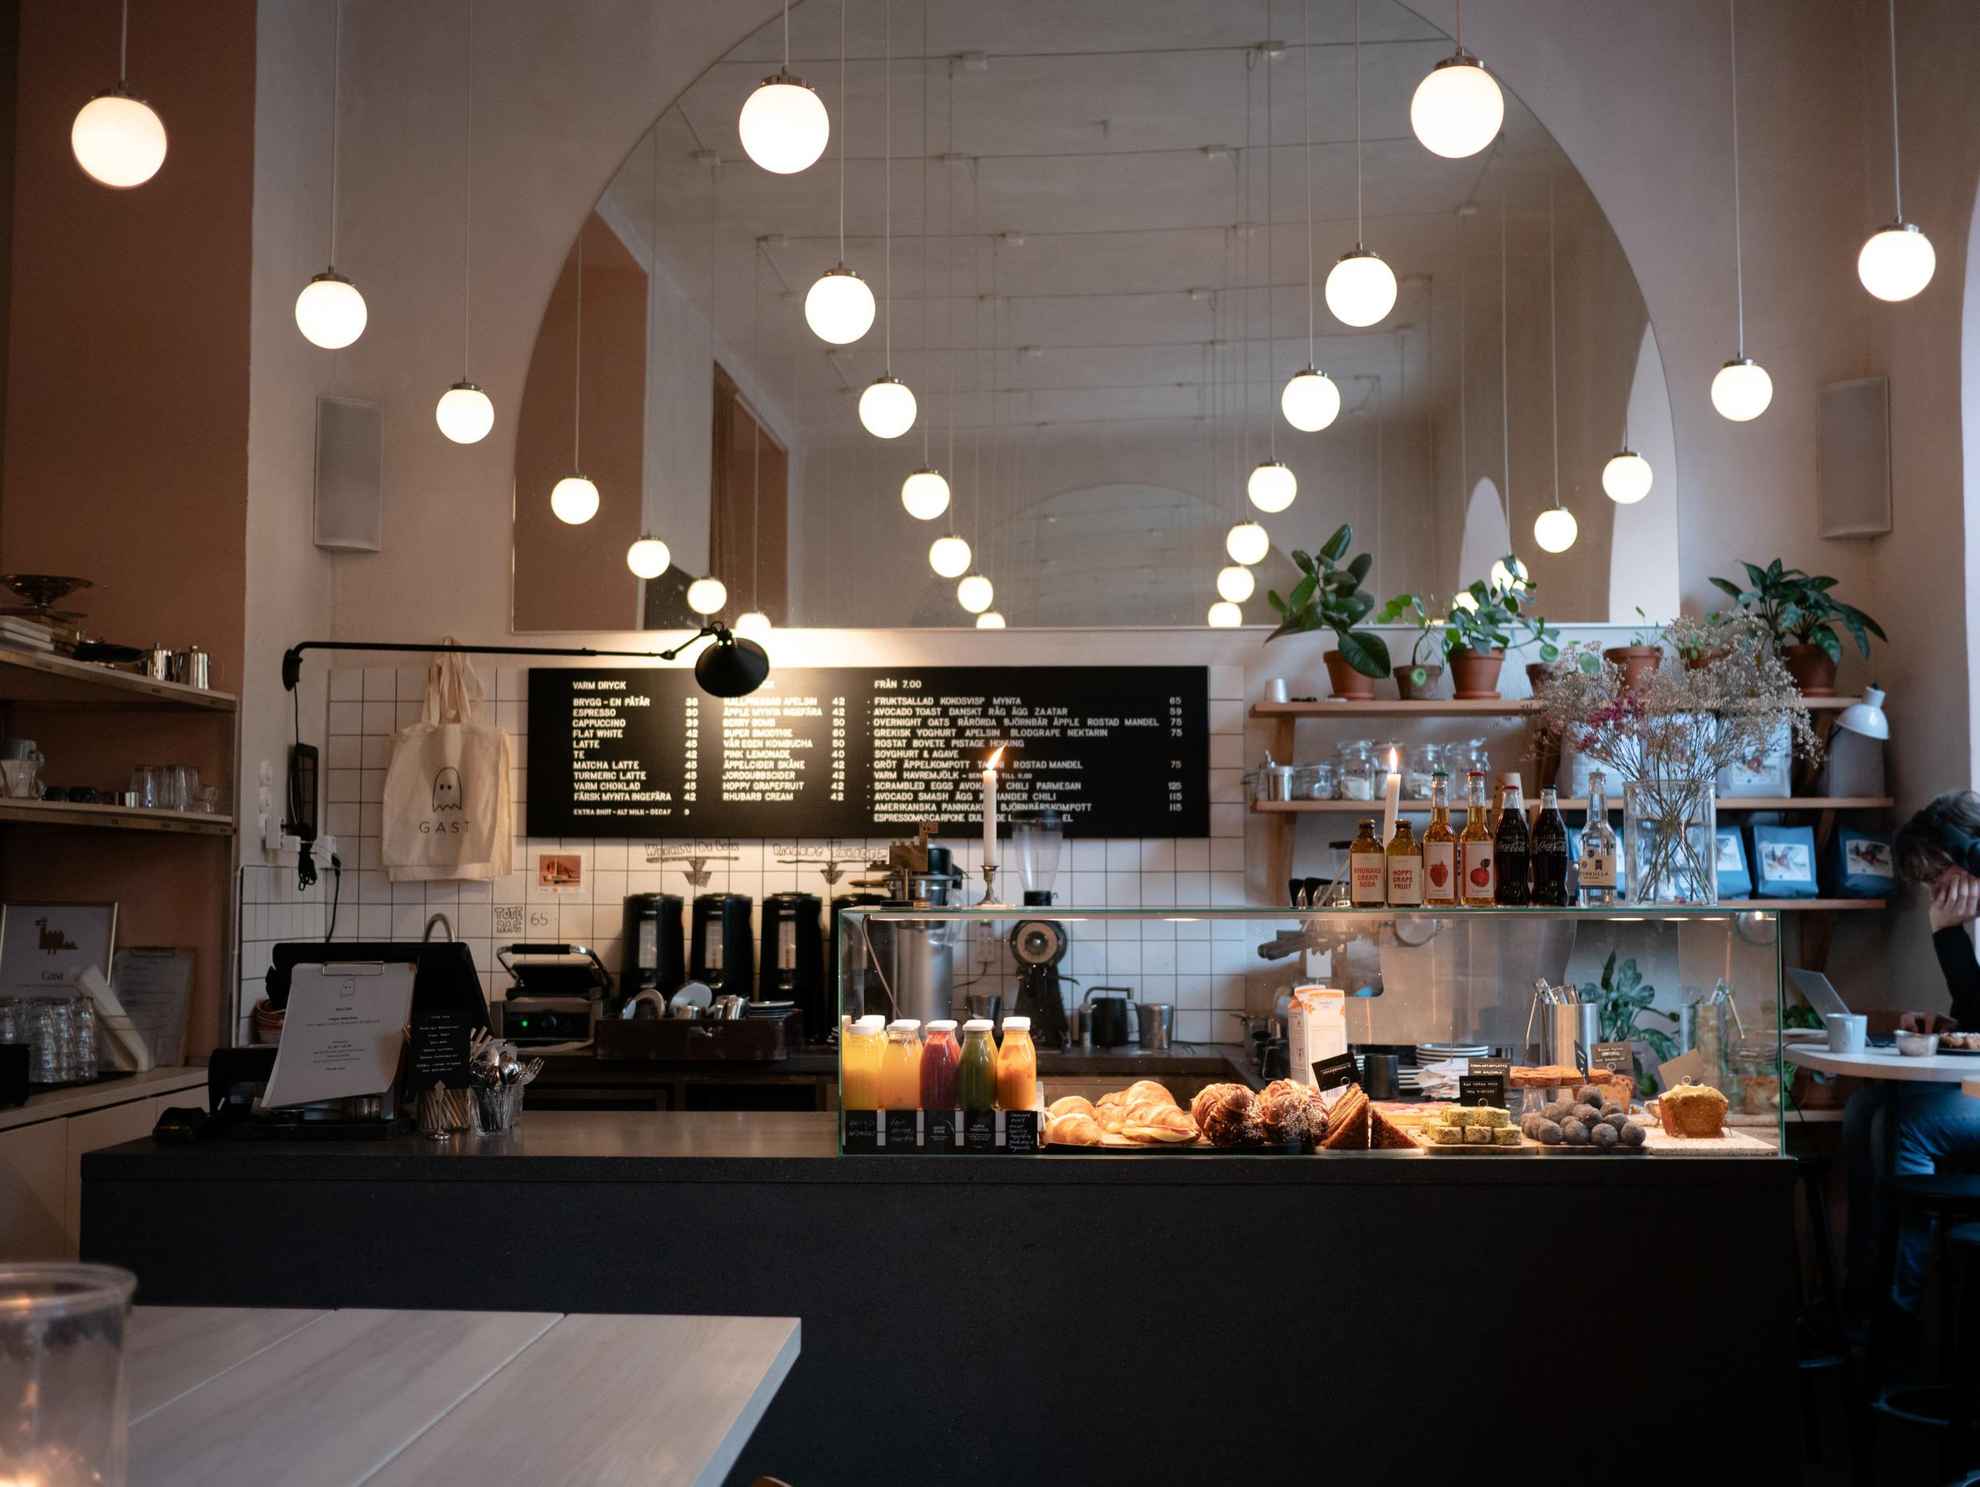 Een toonbank met broodjes, brood, gebak en diverse frisdranken in een café. Achter de toonbank een koffiezetapparaat. Aan het plafond hangen verschillende kleine bollampjes.